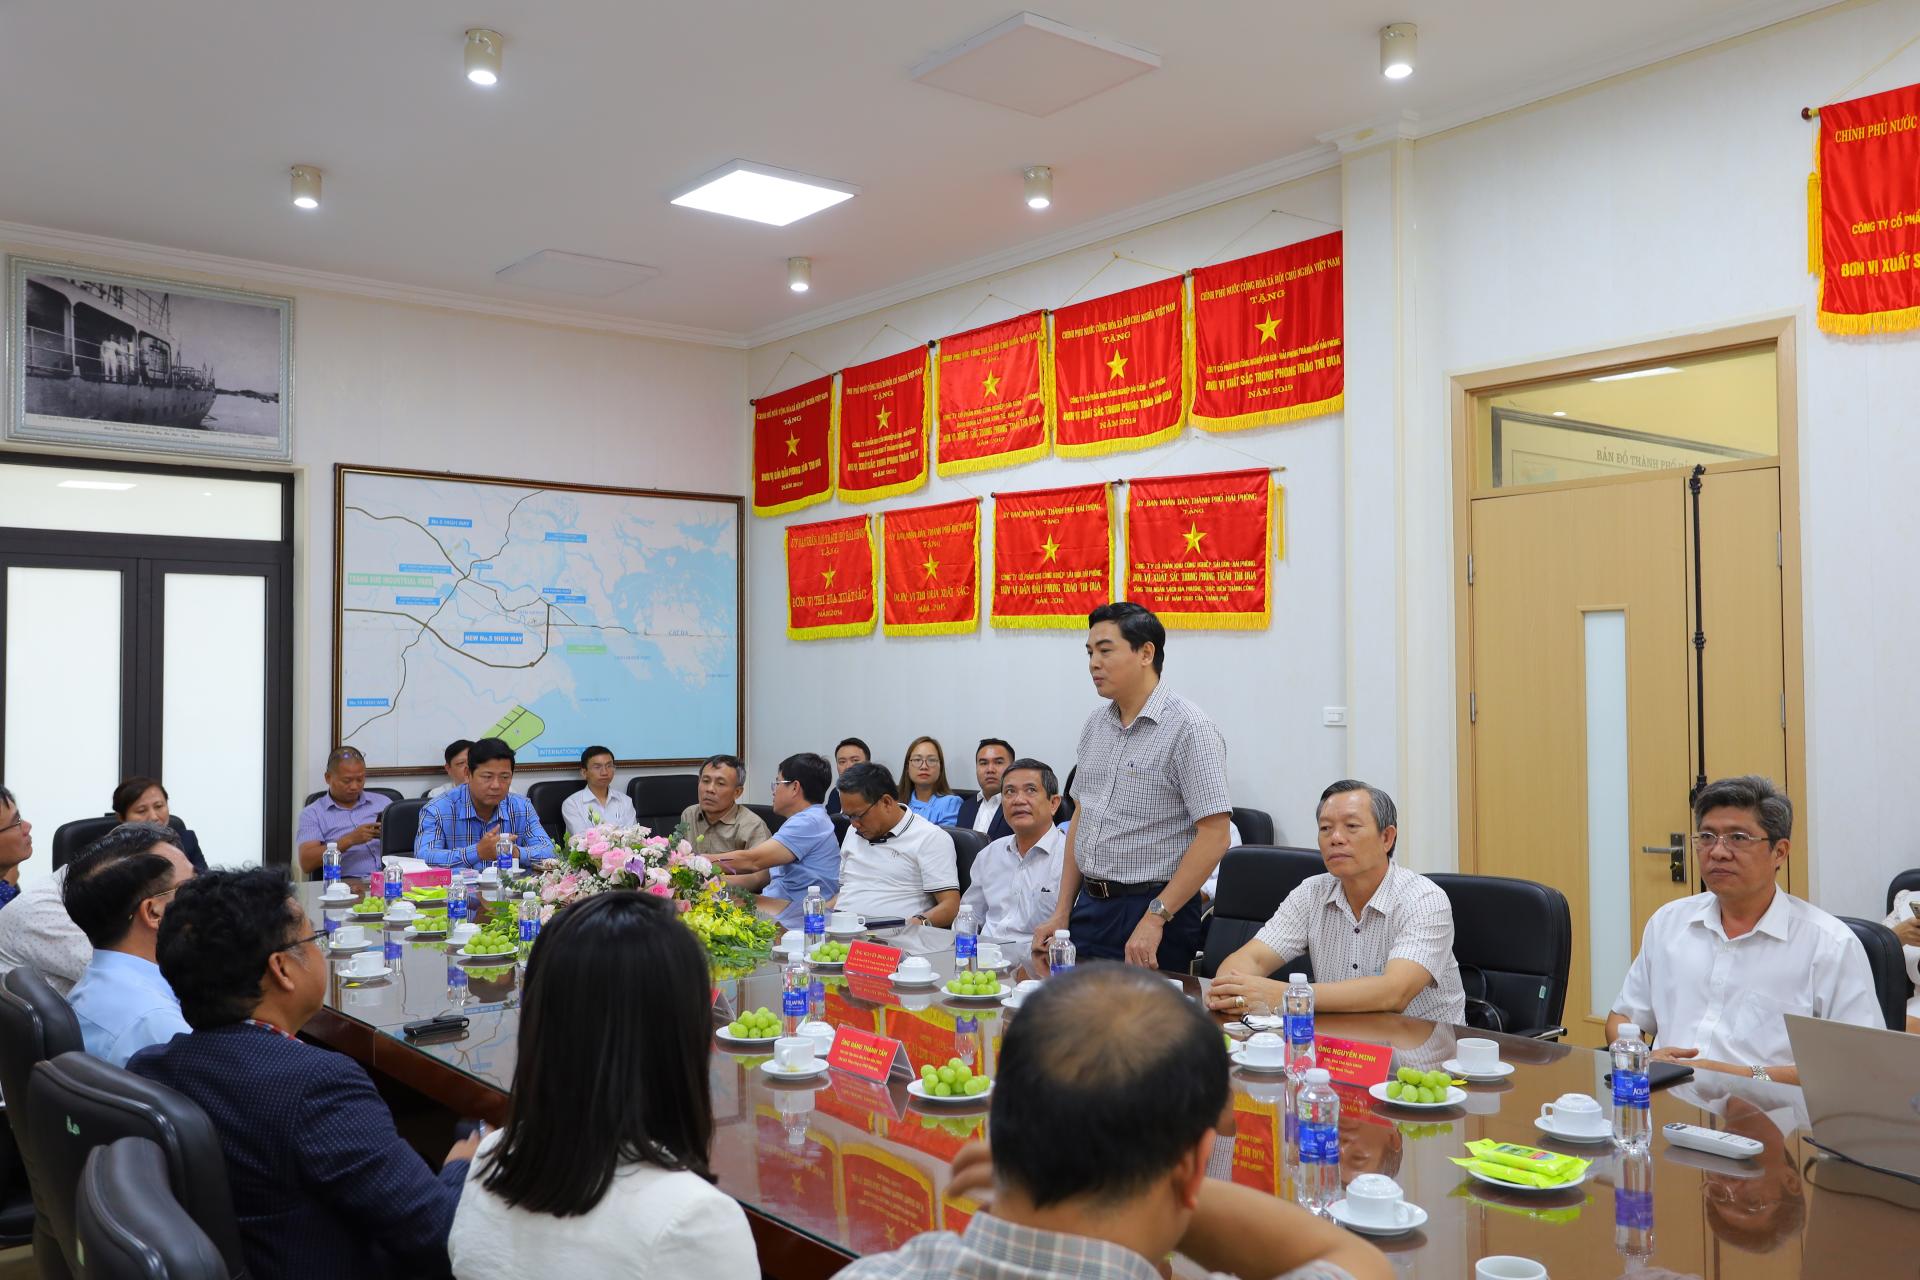 Ảnh: Ông Nguyễn Hoài Anh - Phó Bí thư Thường trực Tỉnh ủy, Chủ tịch HĐND Tỉnh Bình Thuận phát biểu tại cuộc làm việc